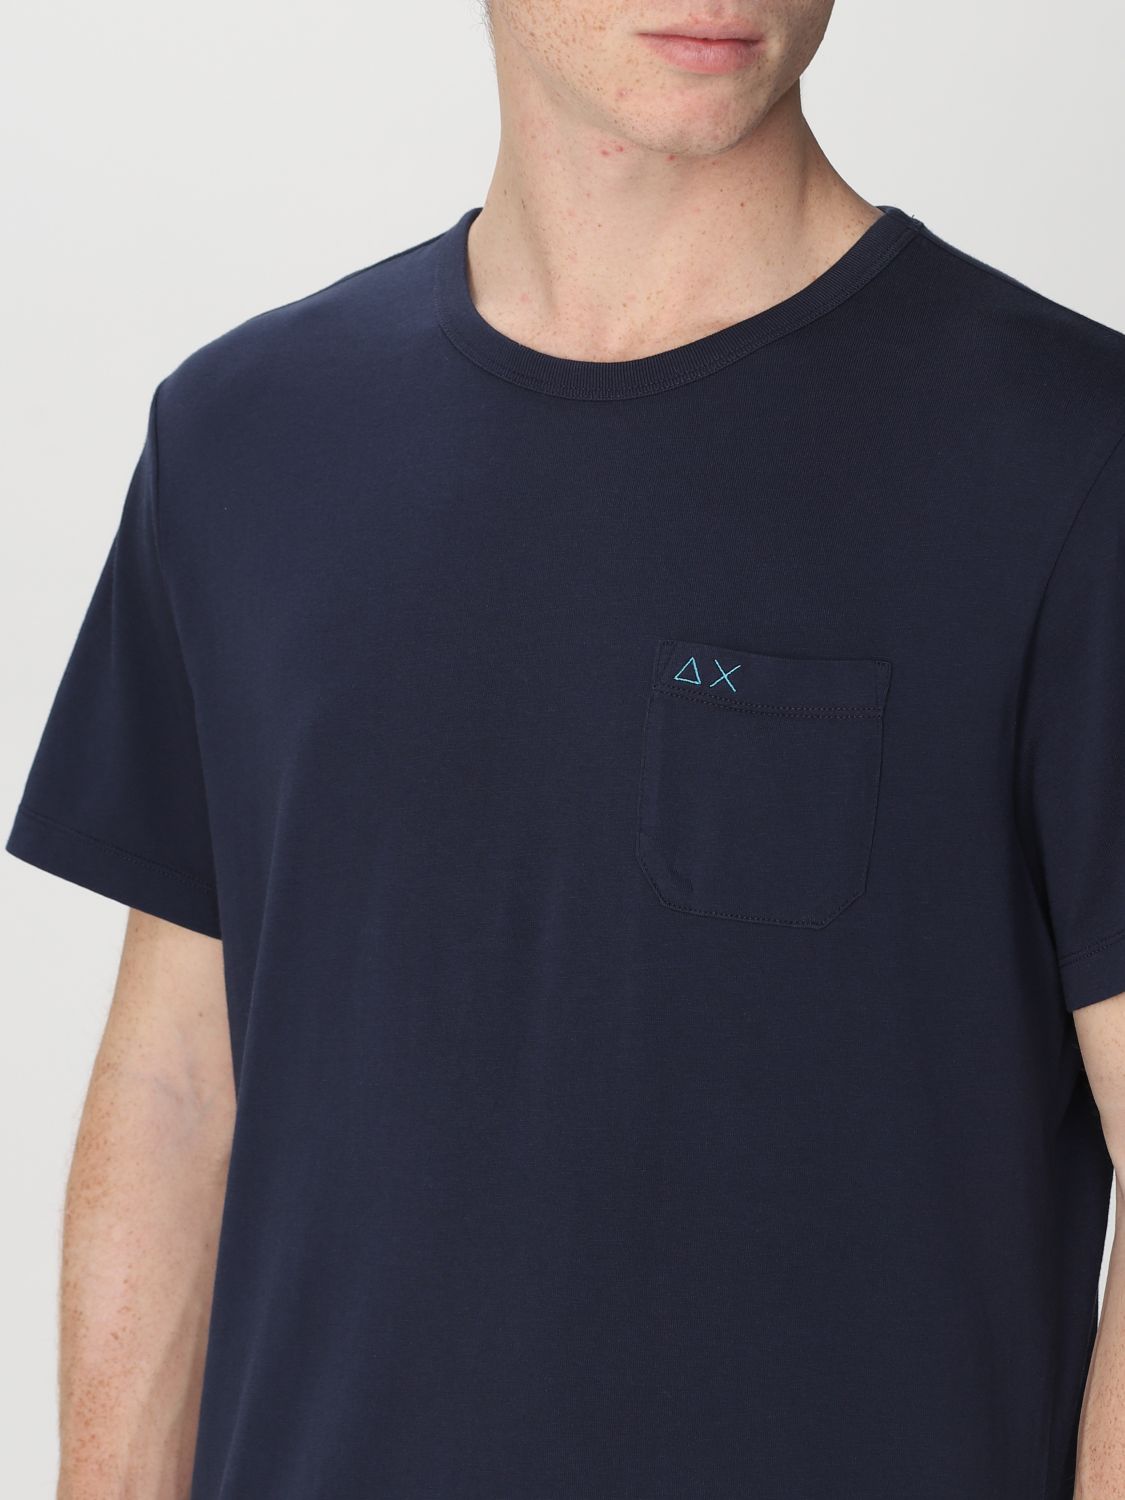 Camiseta Sun 68: Camiseta Sun 68 para hombre azul marino 3